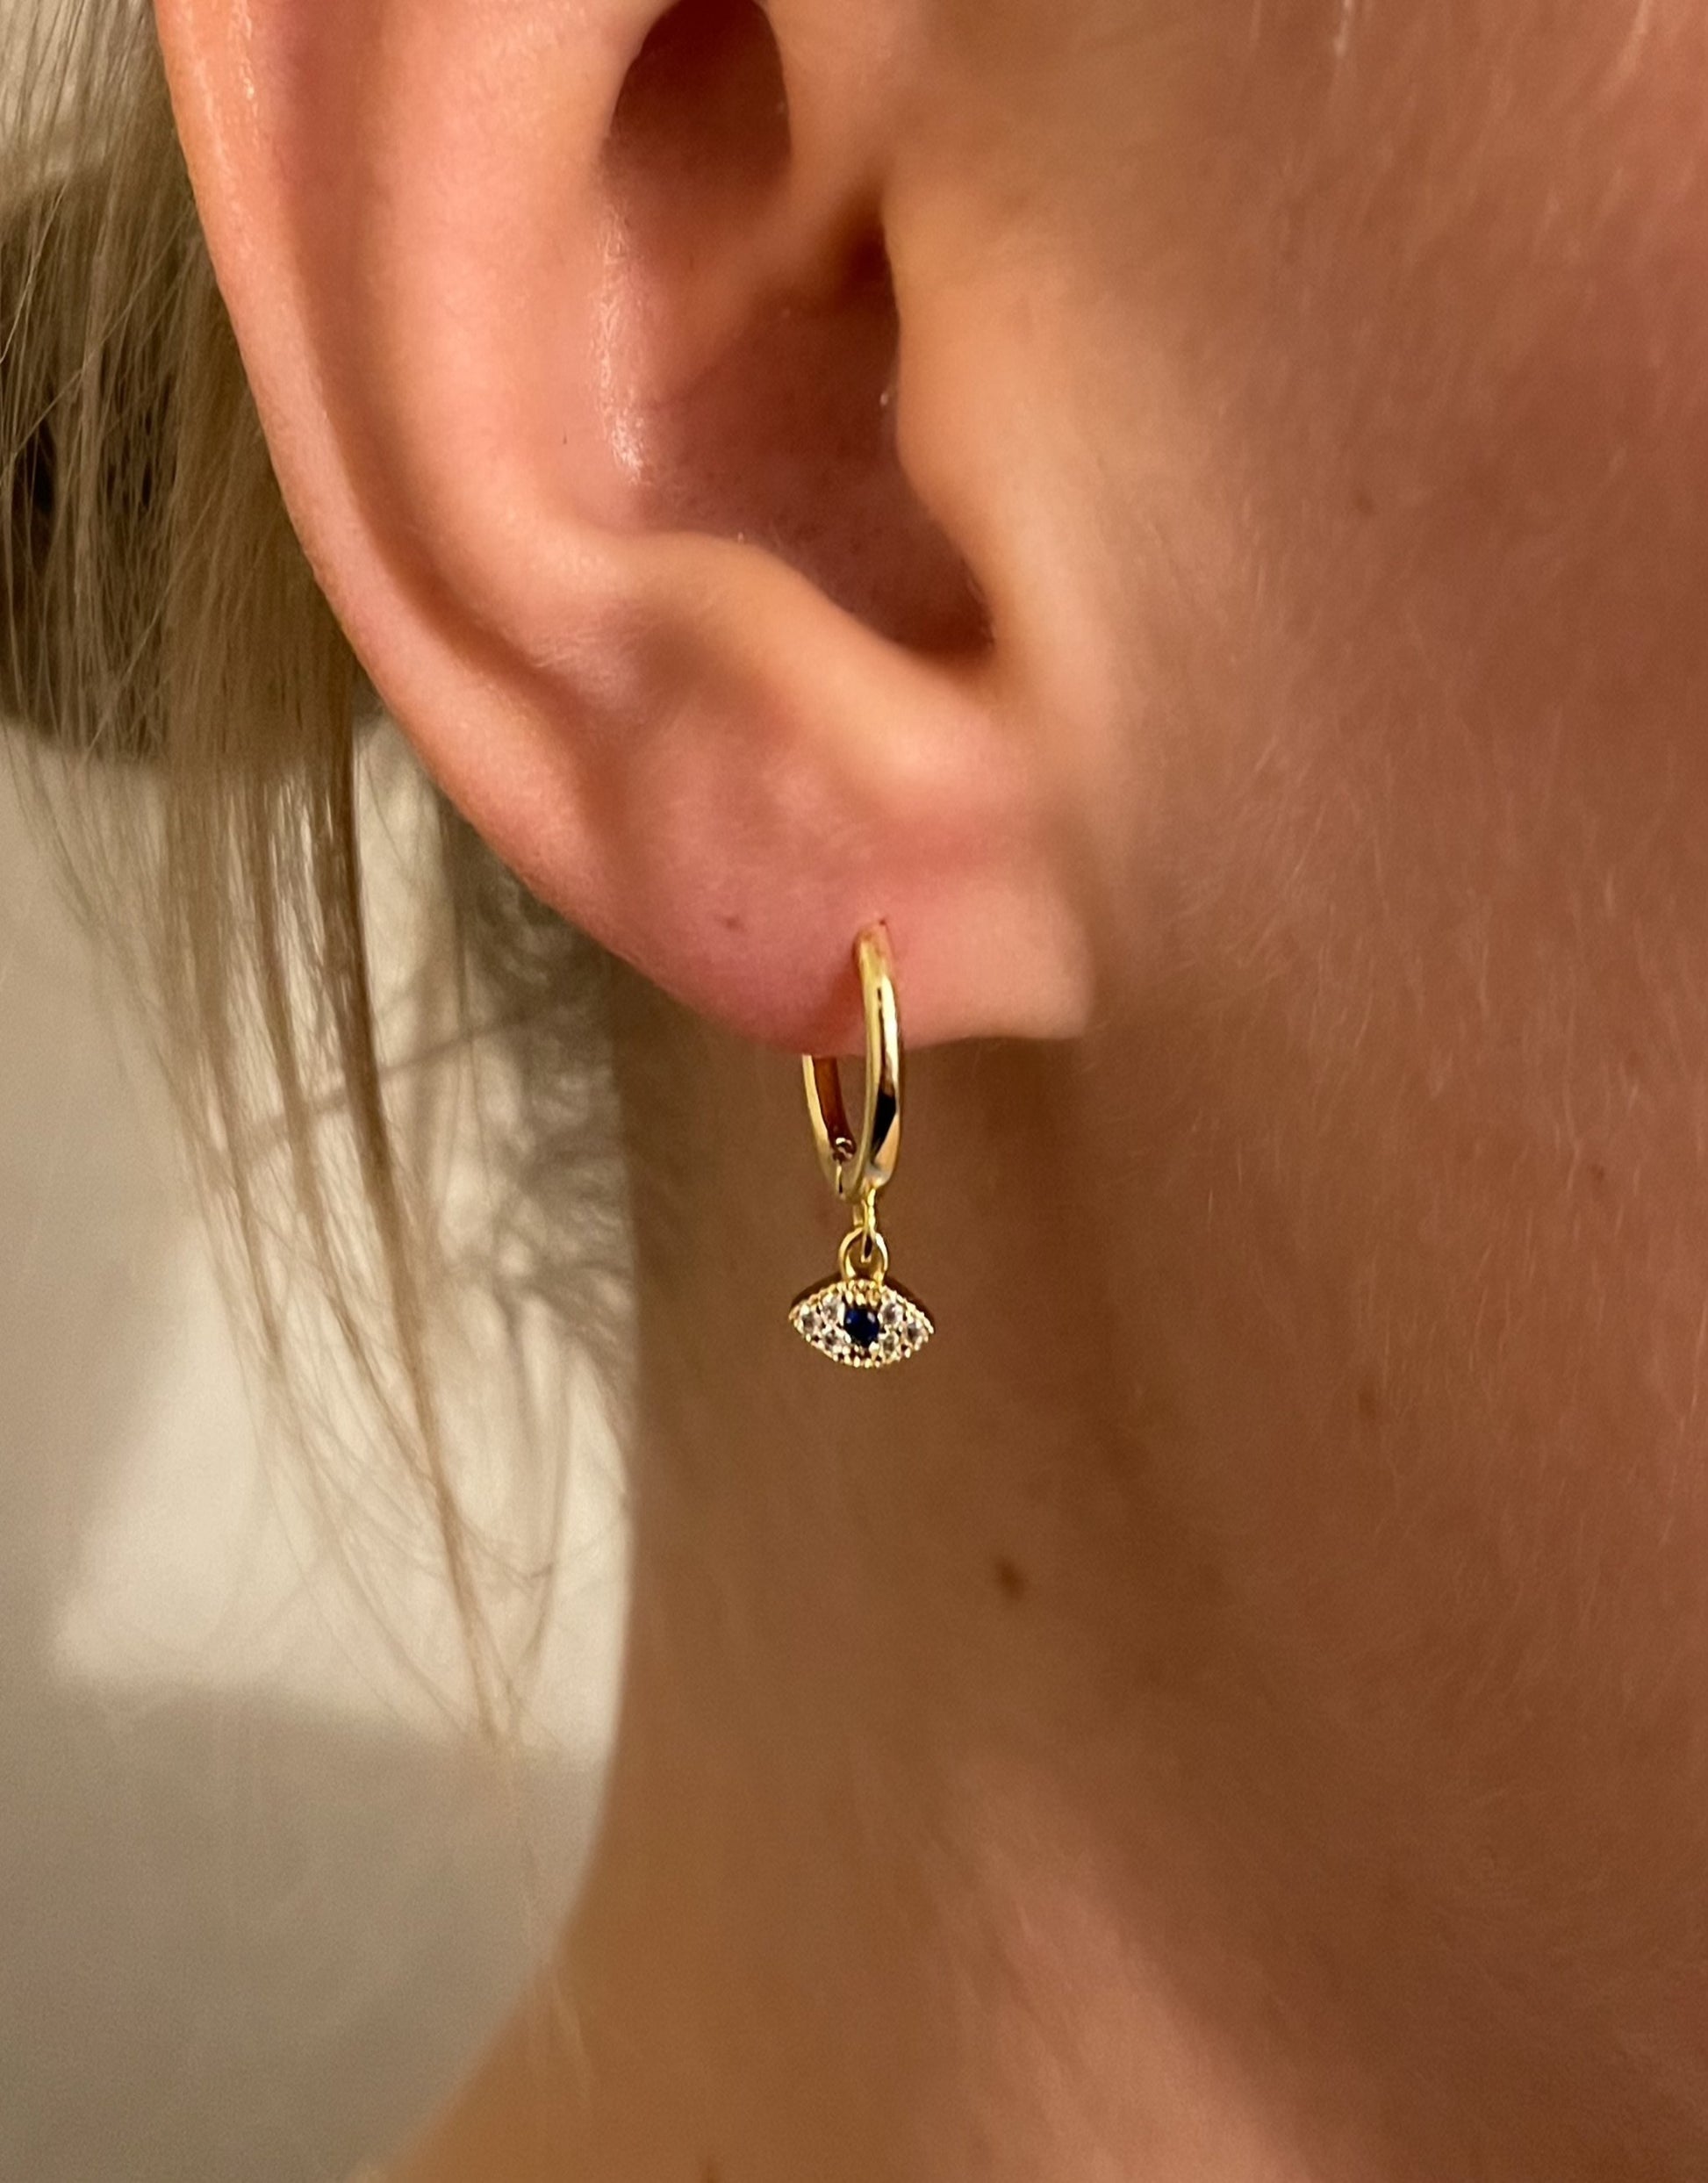 Nazar øreringe i guld med små flotte zircon sten og en blå sten som øje.